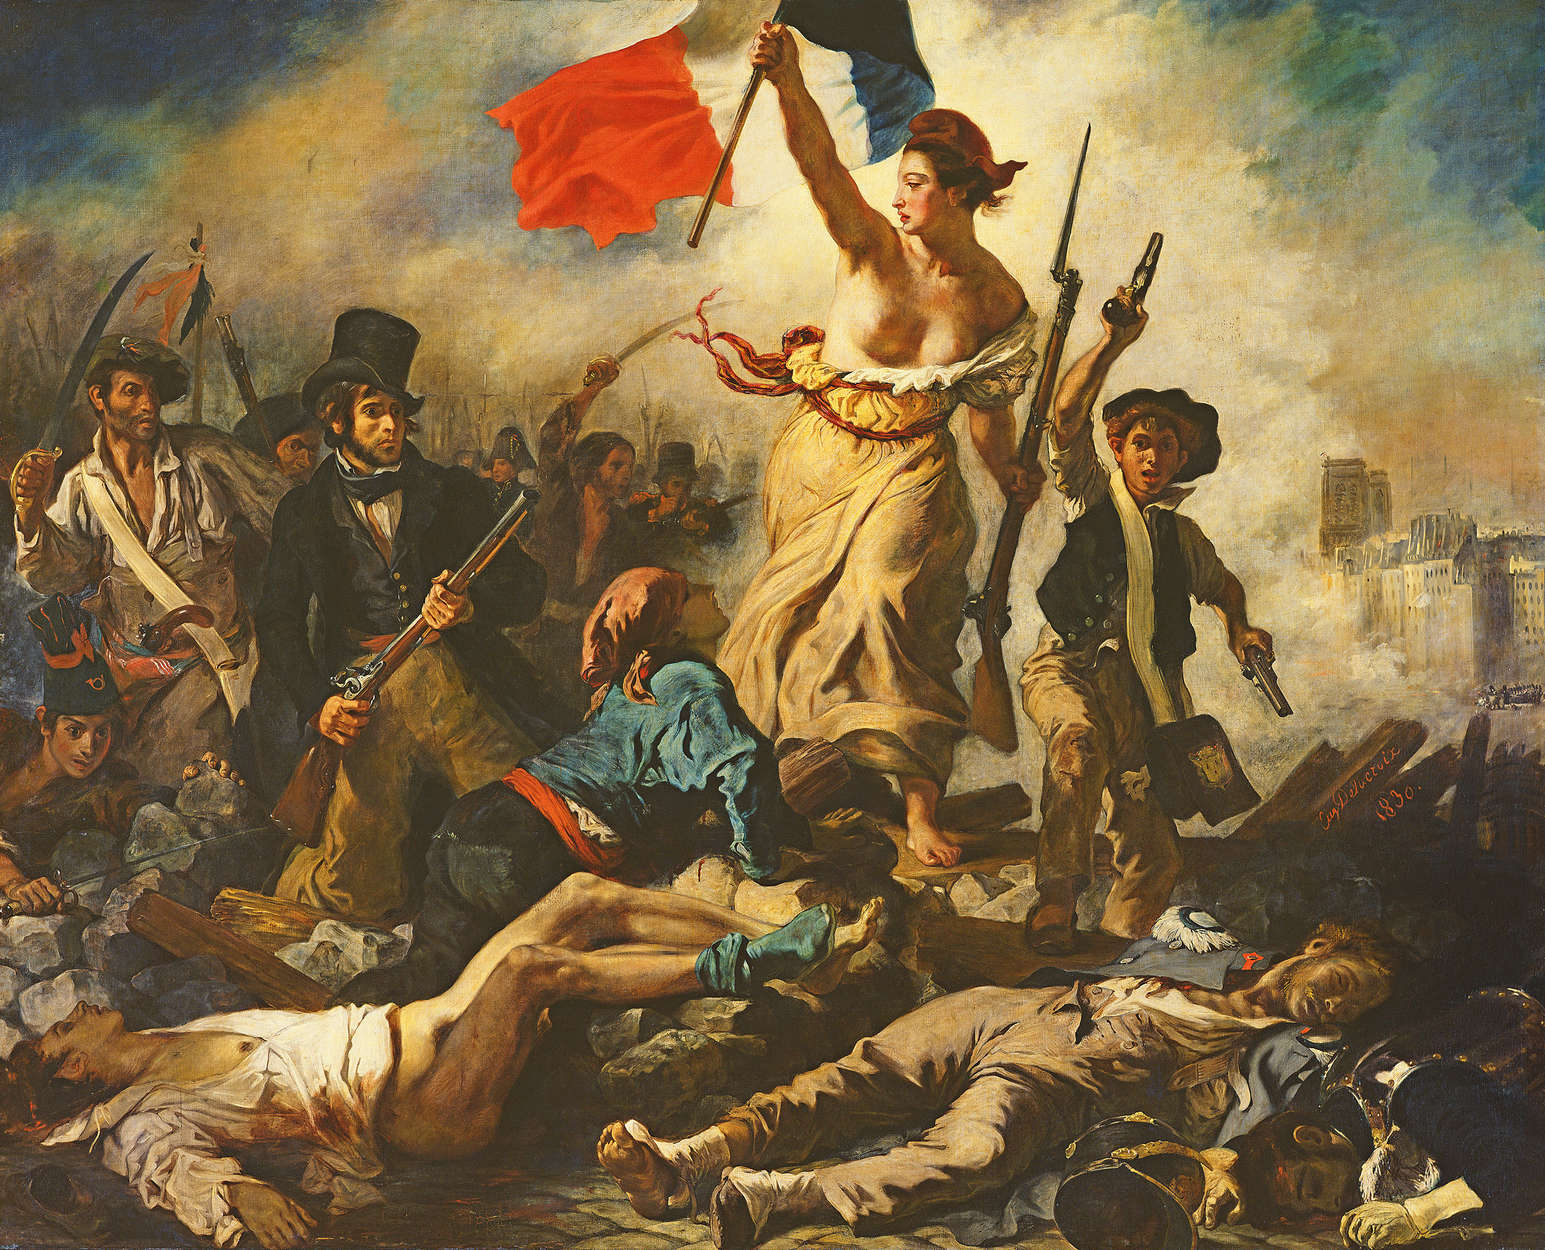             Fototapete "Die Freiheit, die das Volk führt" von Eugène Delacroix
        